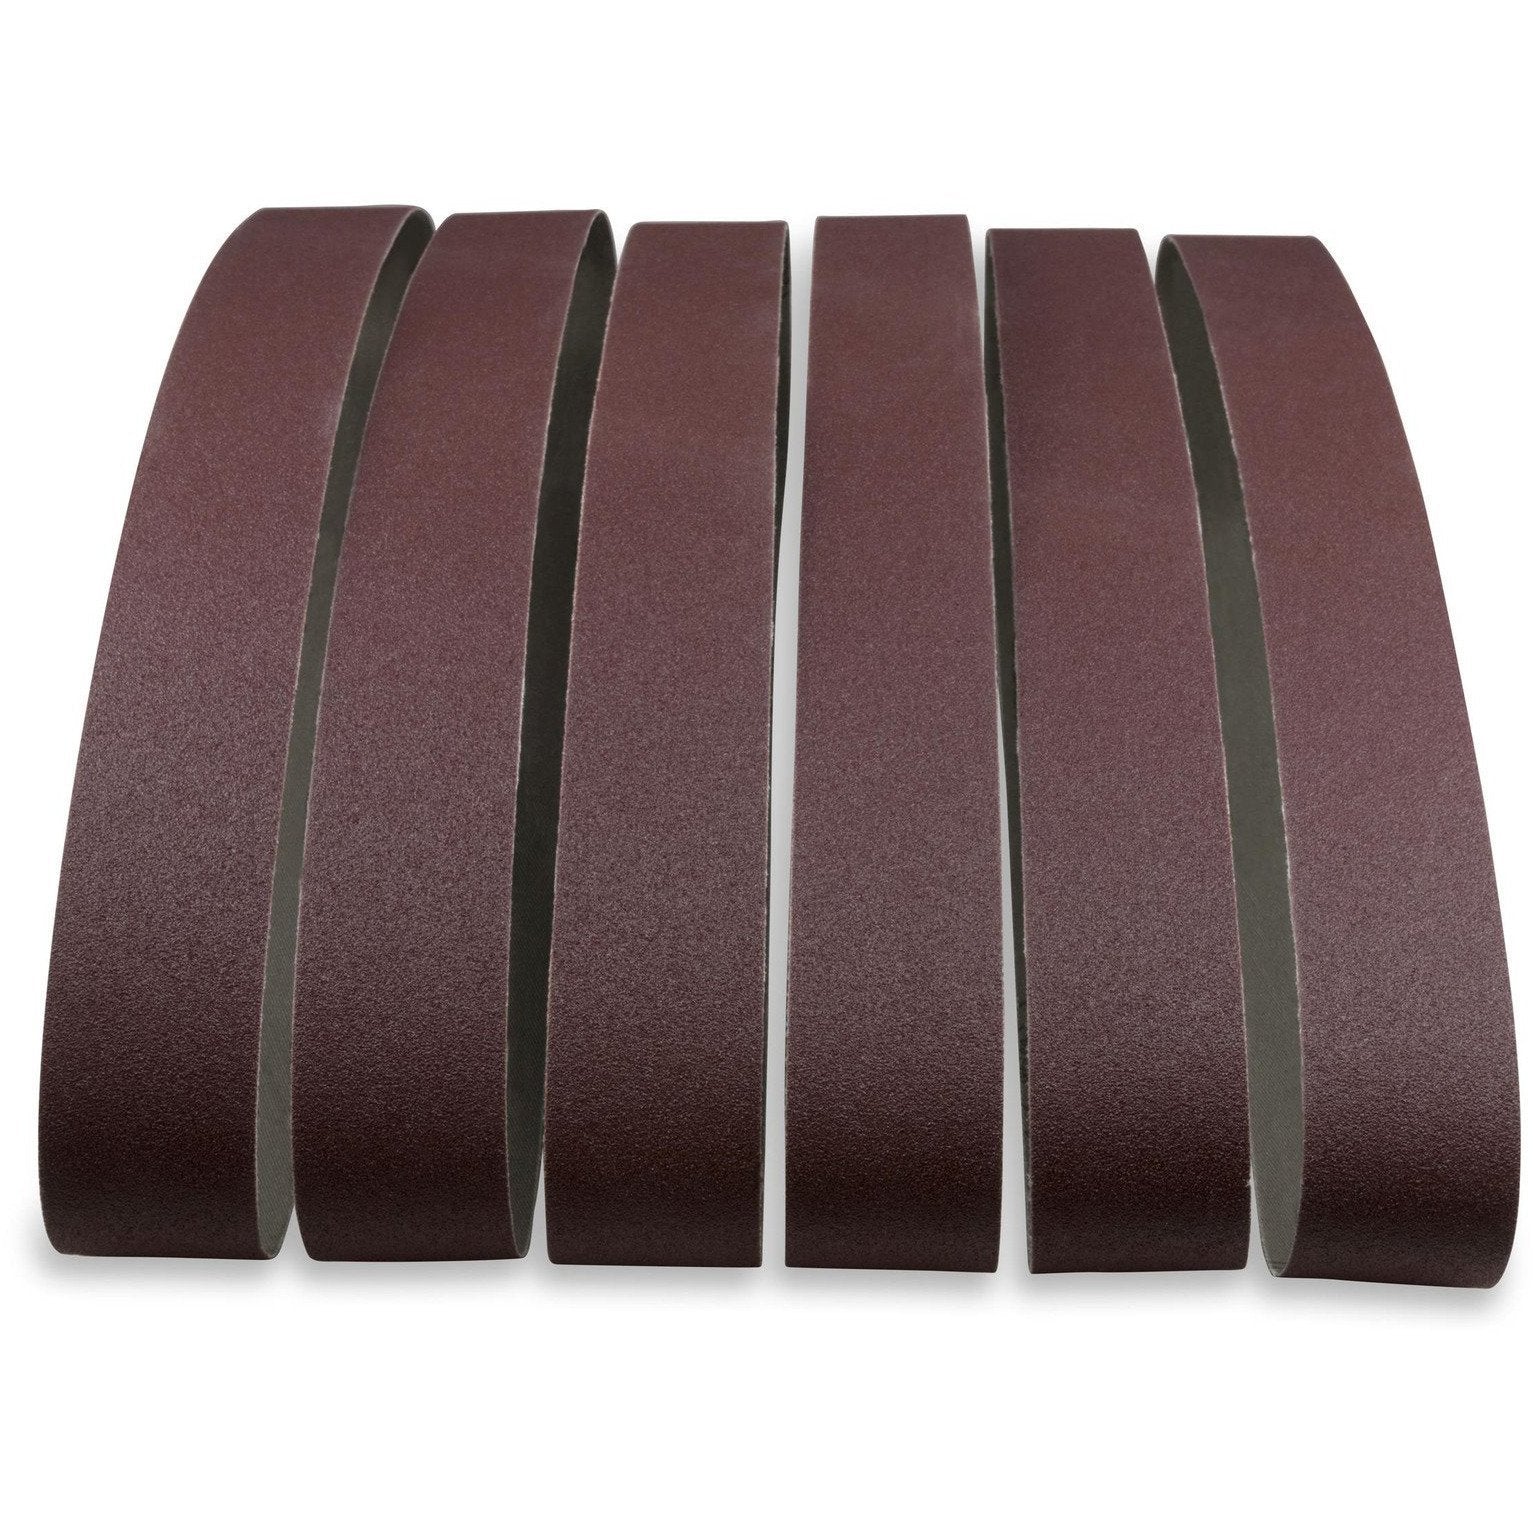 1 X 44 Inch Aluminum Oxide Metal Sanding Belts, 12 Pack - Red Label Abrasives